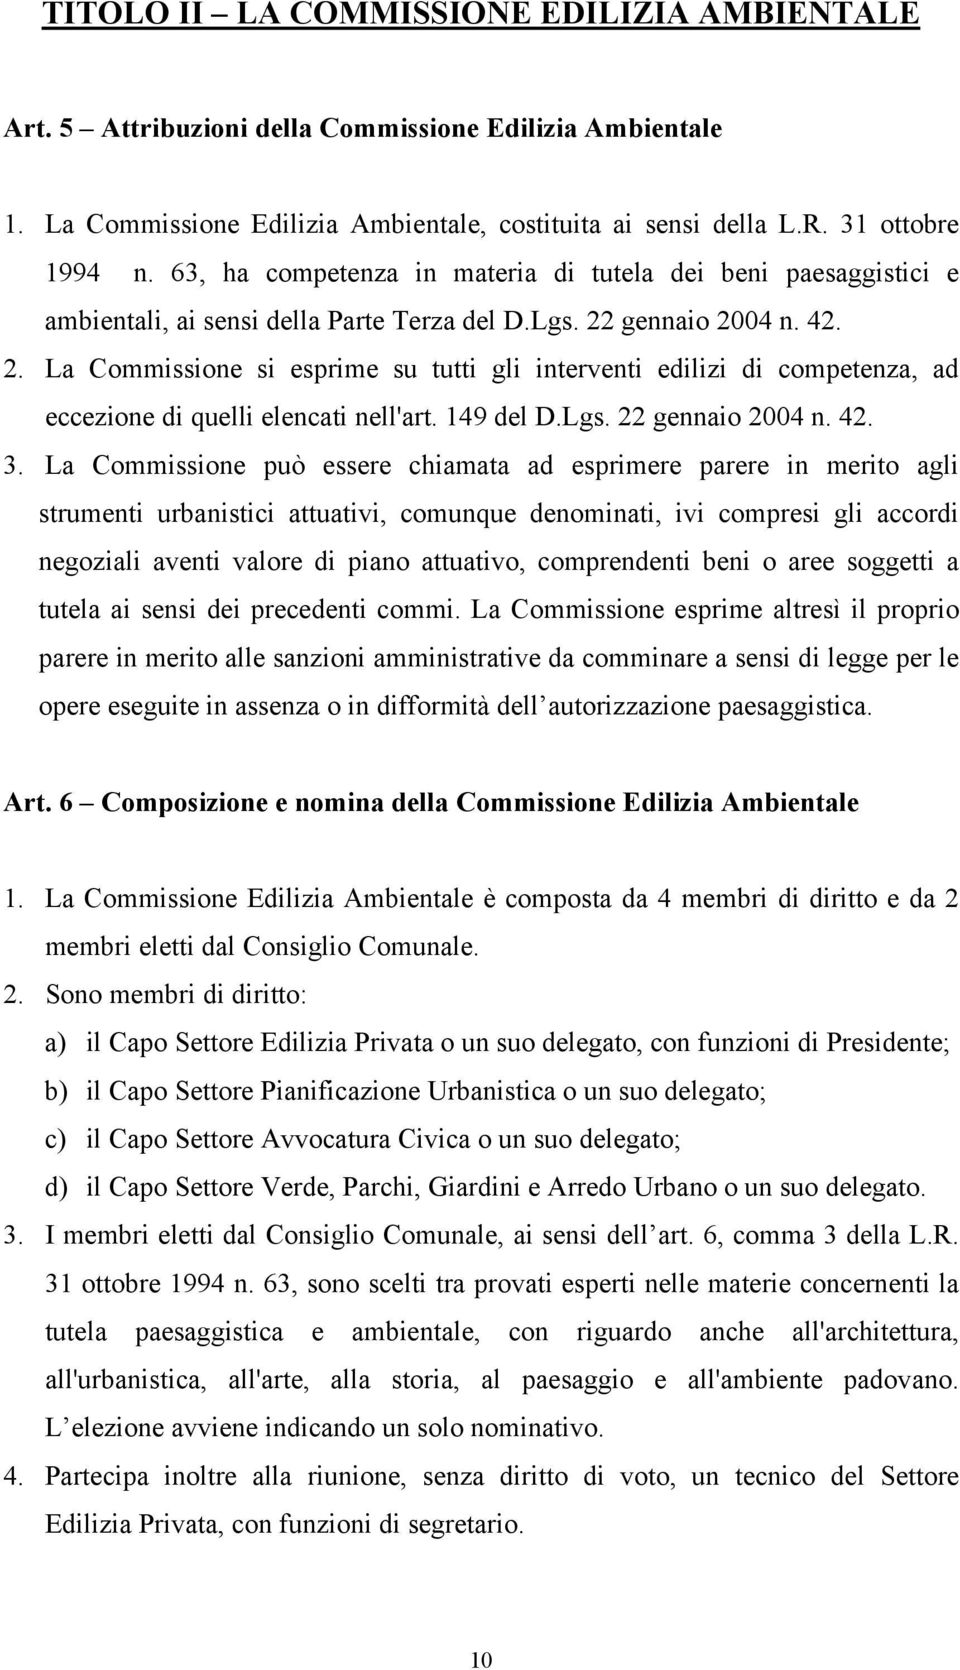 gennaio 2004 n. 42. 2. La Commissione si esprime su tutti gli interventi edilizi di competenza, ad eccezione di quelli elencati nell'art. 149 del D.Lgs. 22 gennaio 2004 n. 42. 3.